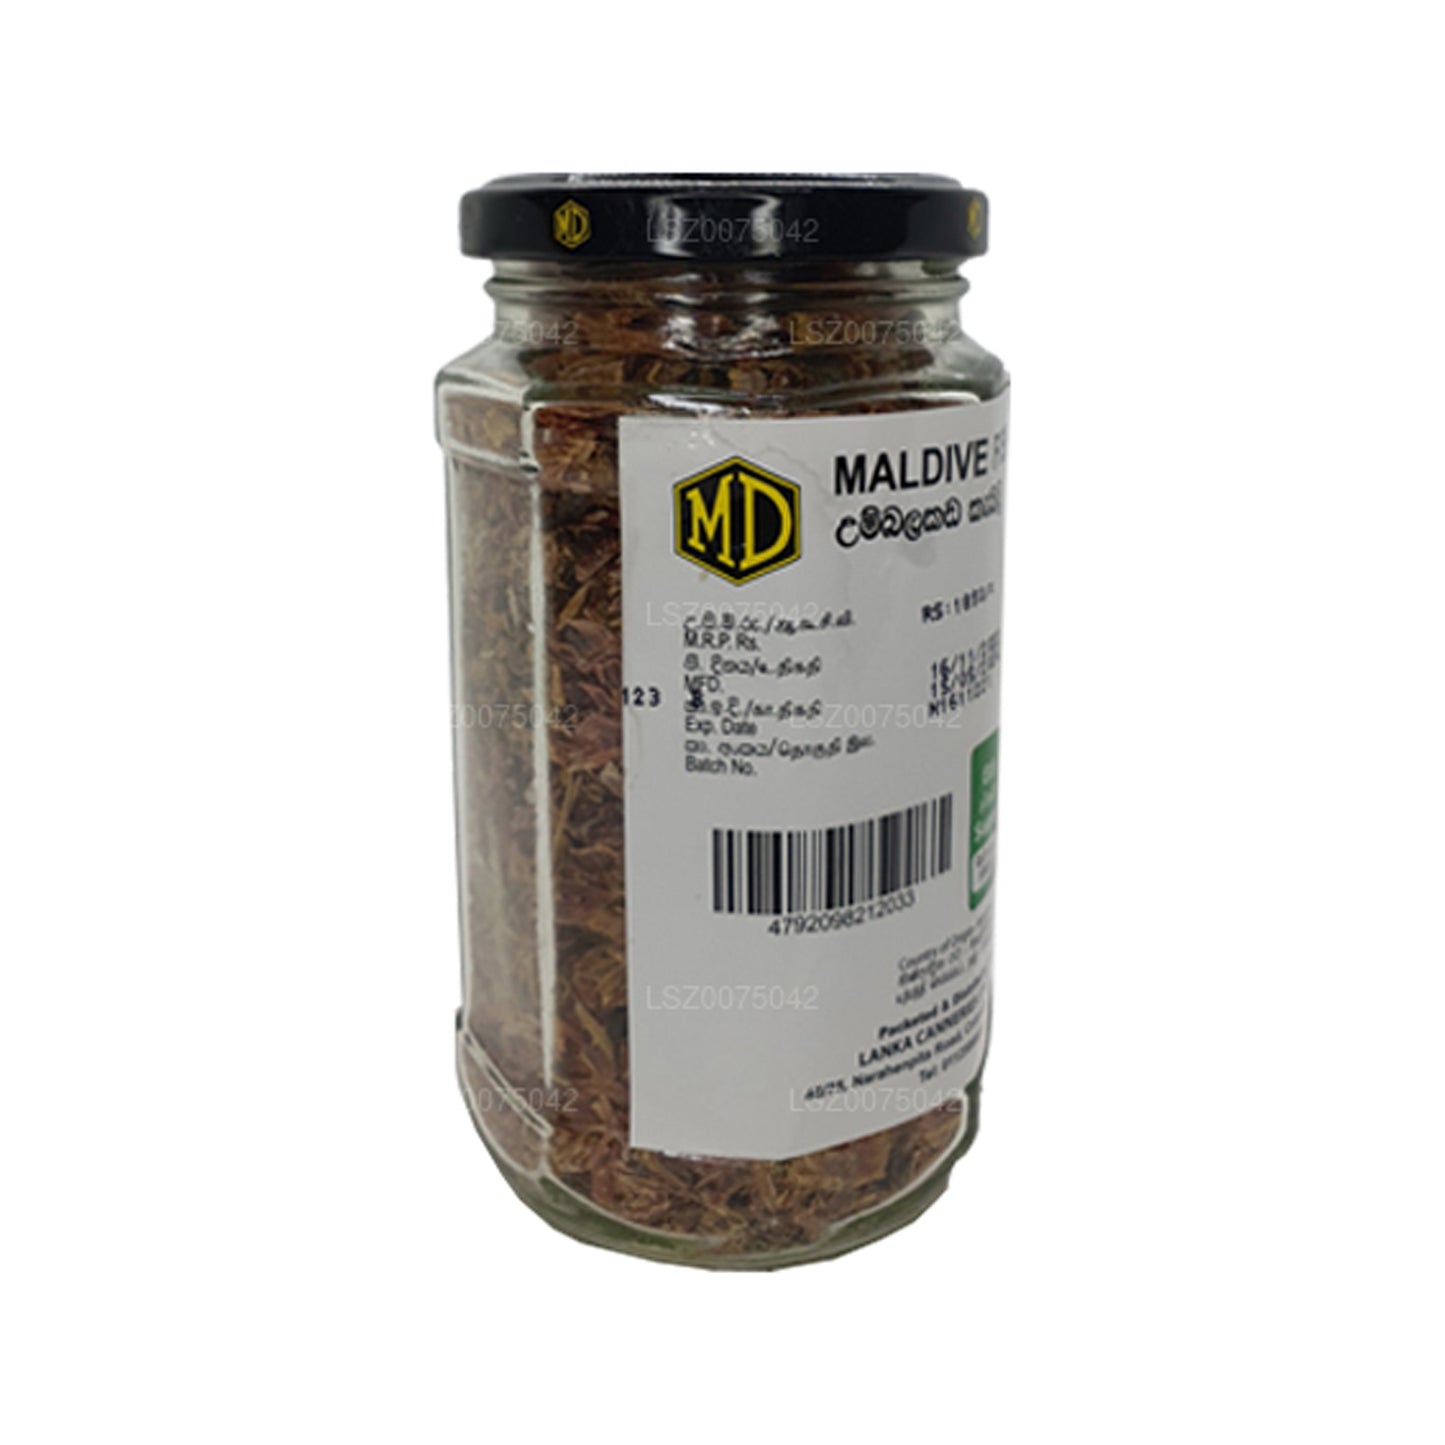 Bouteille de chips de poisson MD Maldive (200 g)